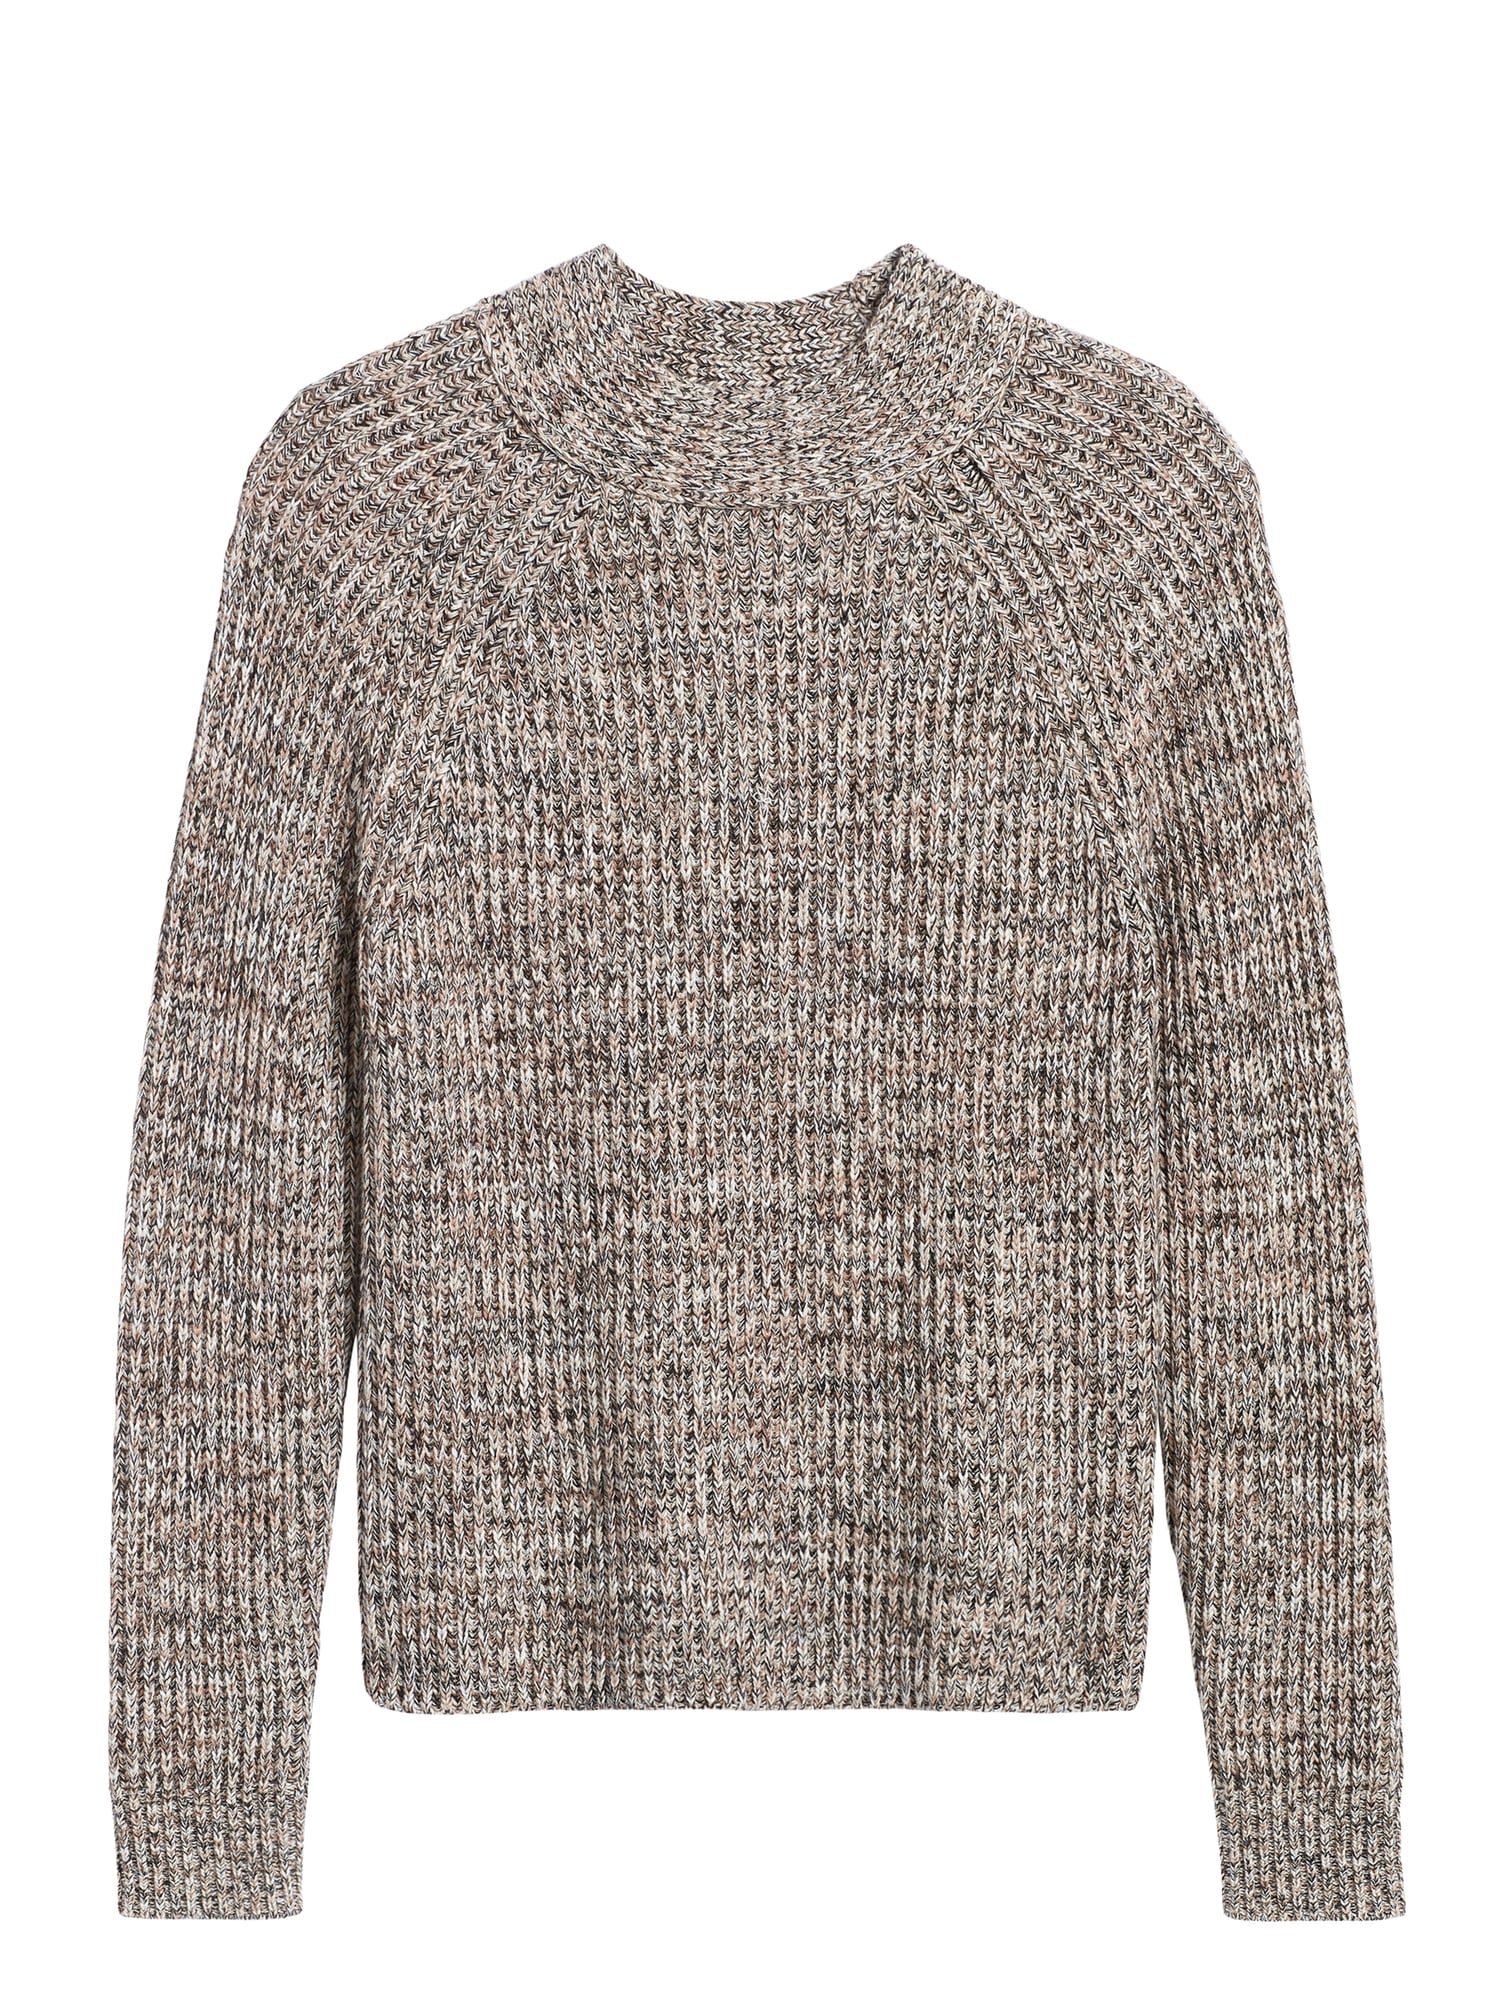 Marled Mock-Neck Sweater